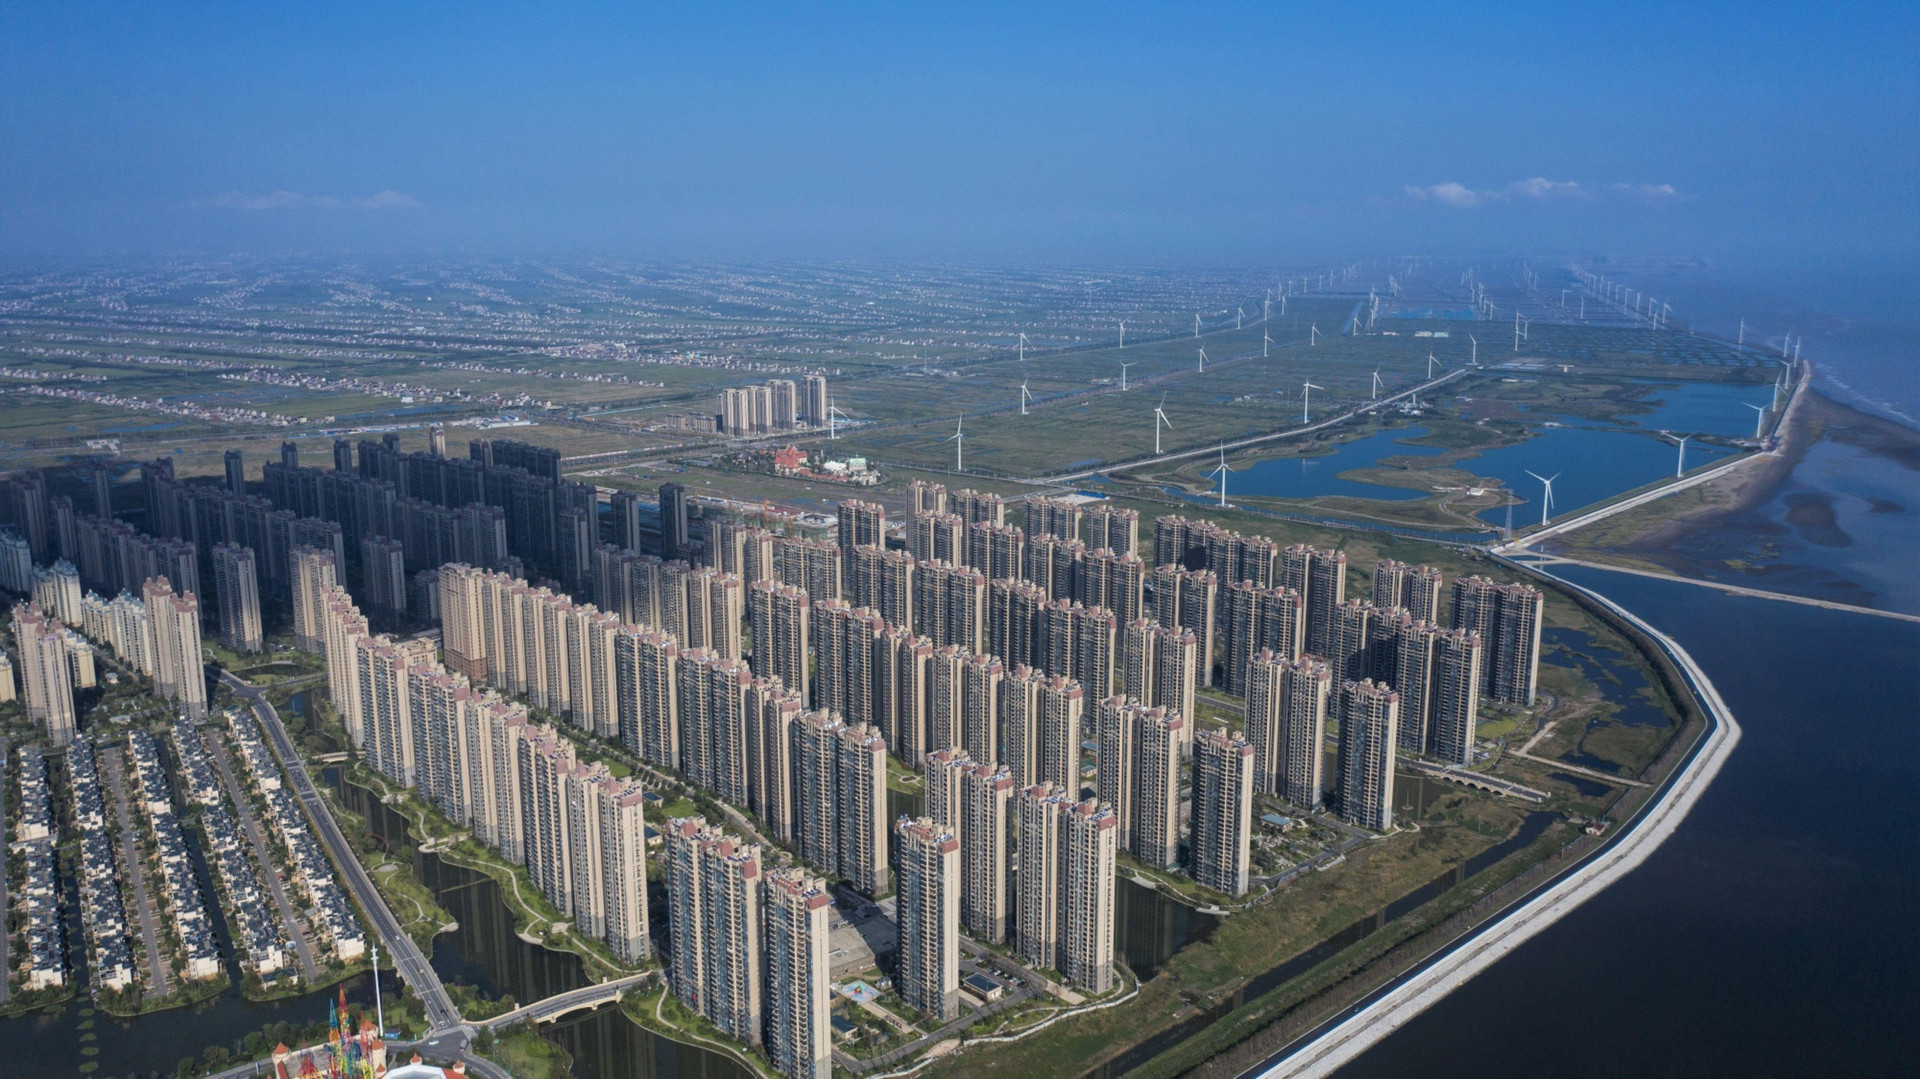 Trung Quốc cân nhắc cứu các doanh nghiệp bất động sản “quá lớn để sụp đổ”